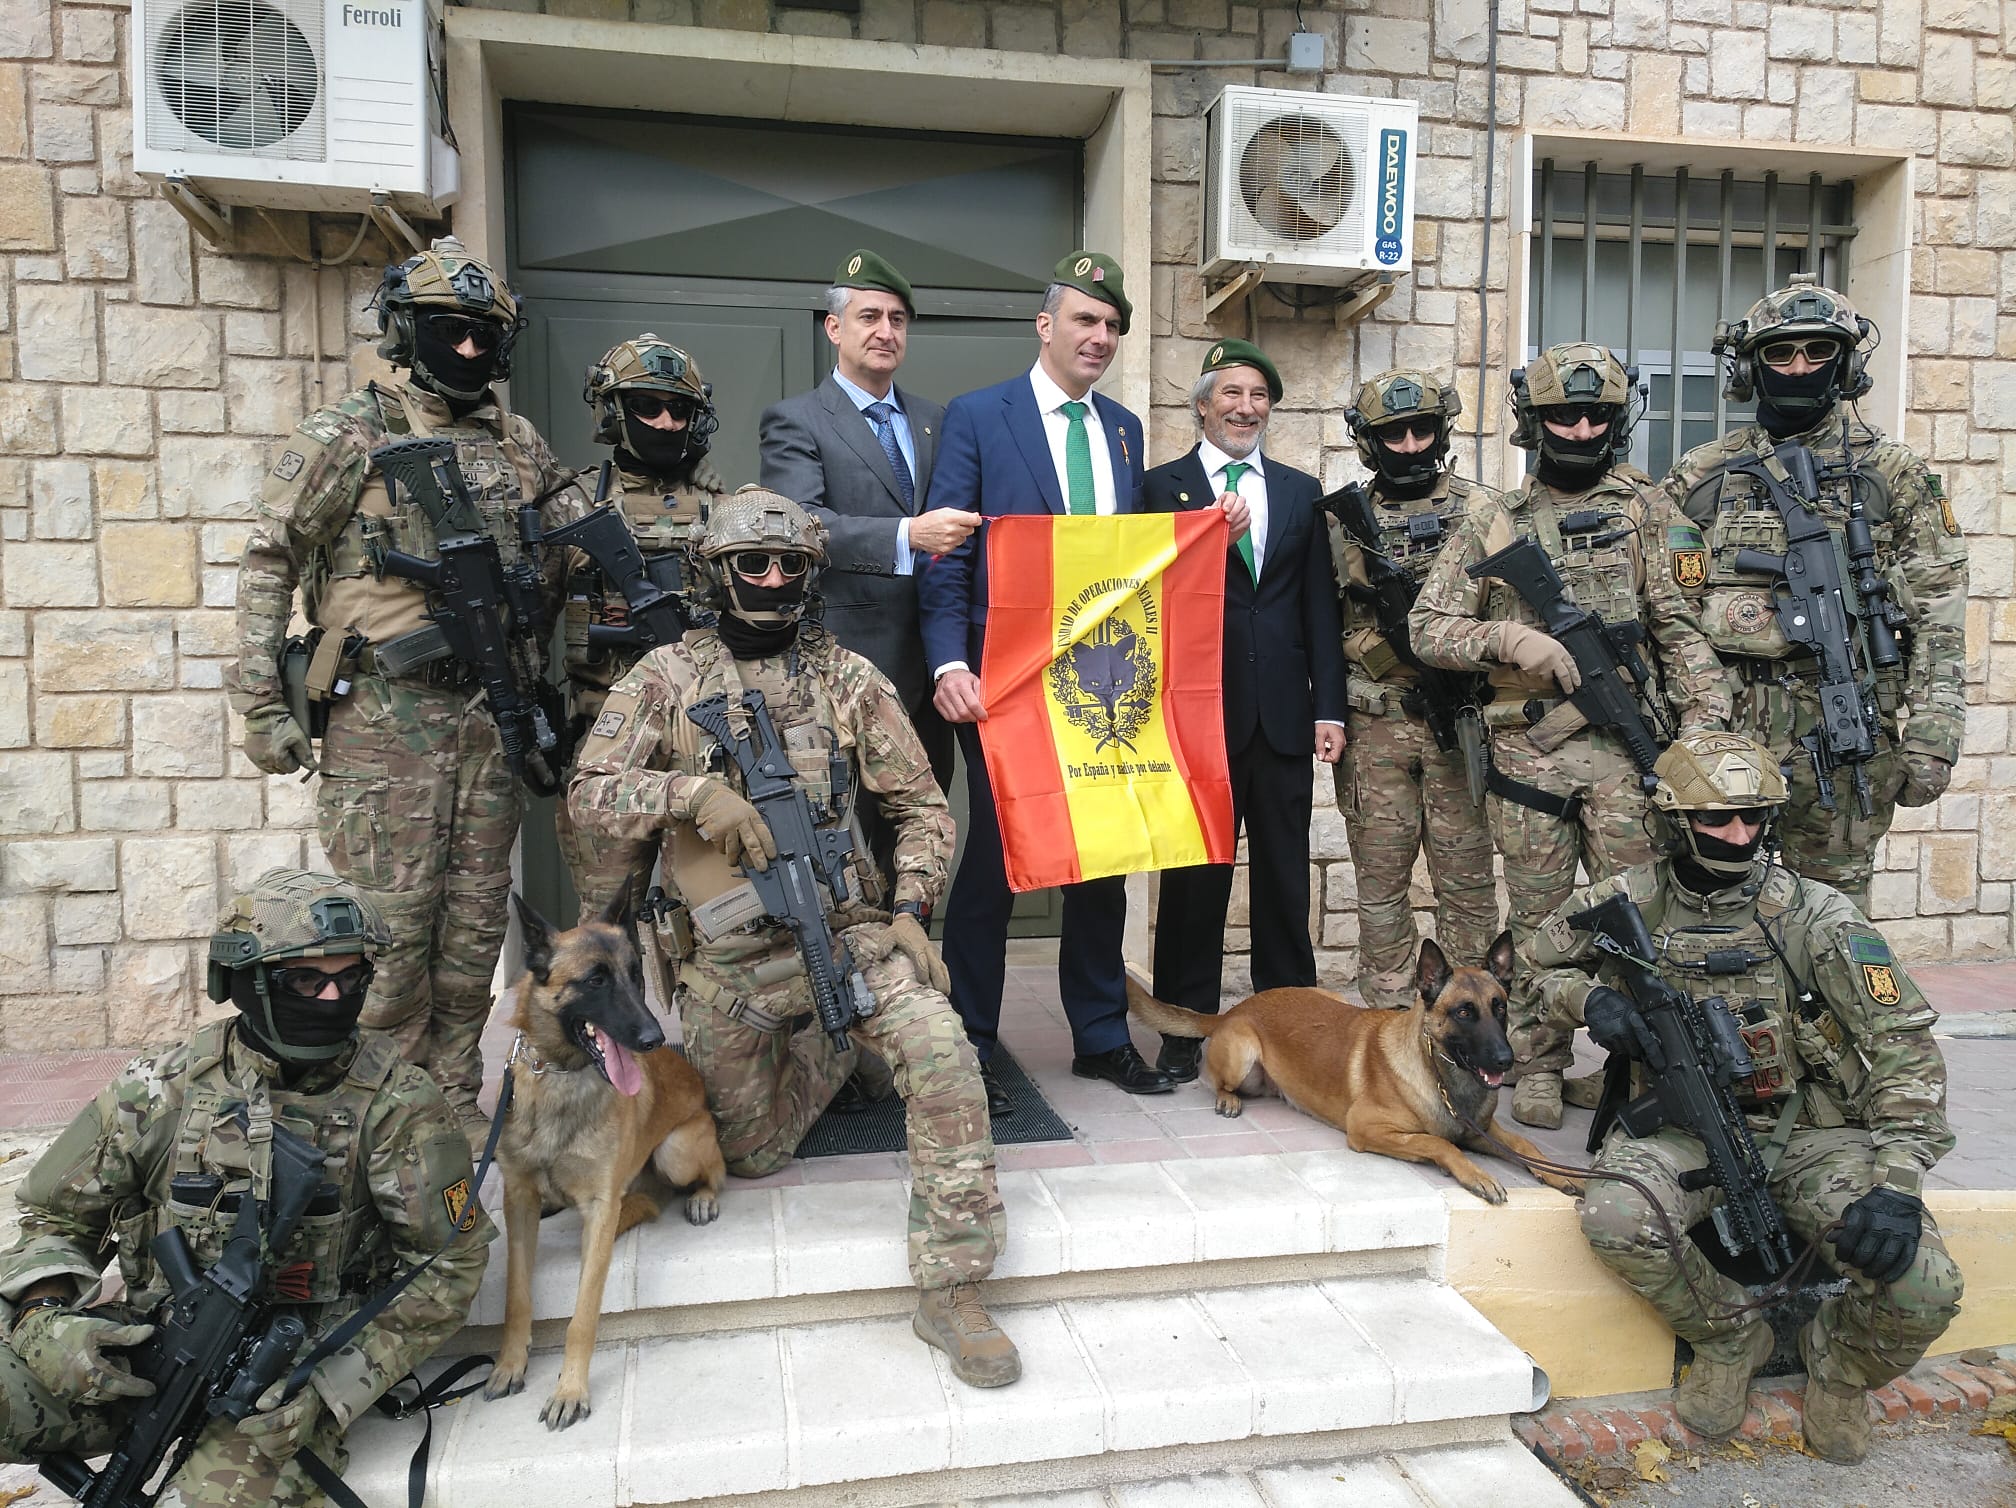 Soldats d'elit espanyols es fotografien amb un dirigent de Vox